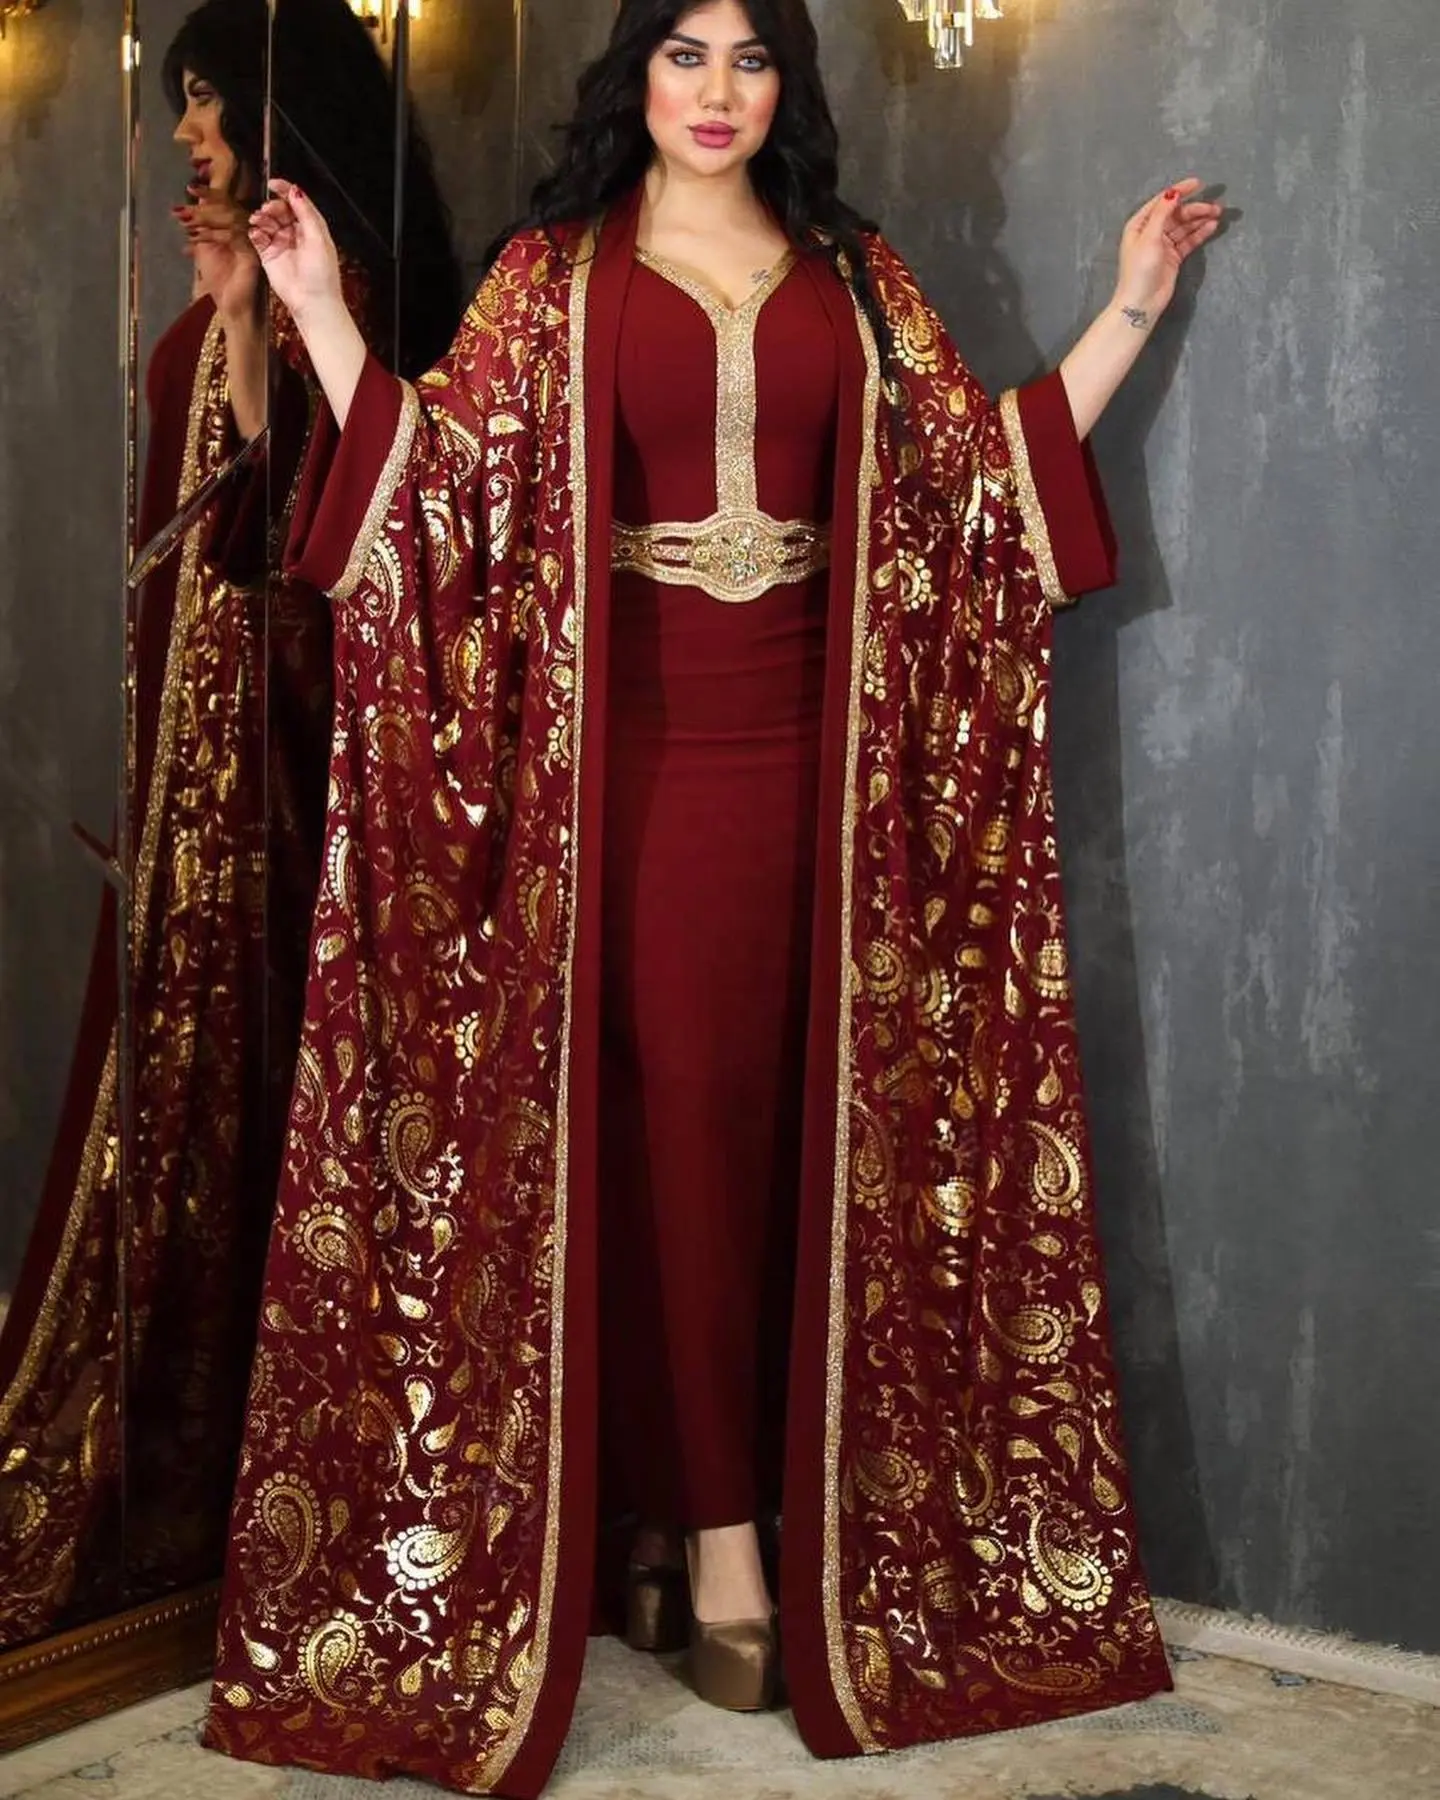 عباية فاخرة للشرق الأوسط إسدال المرأة المسلمة عباية من قطعتين مطرزة بالماس سترة مفتوحة فستان سهرة أفريقي أنيق